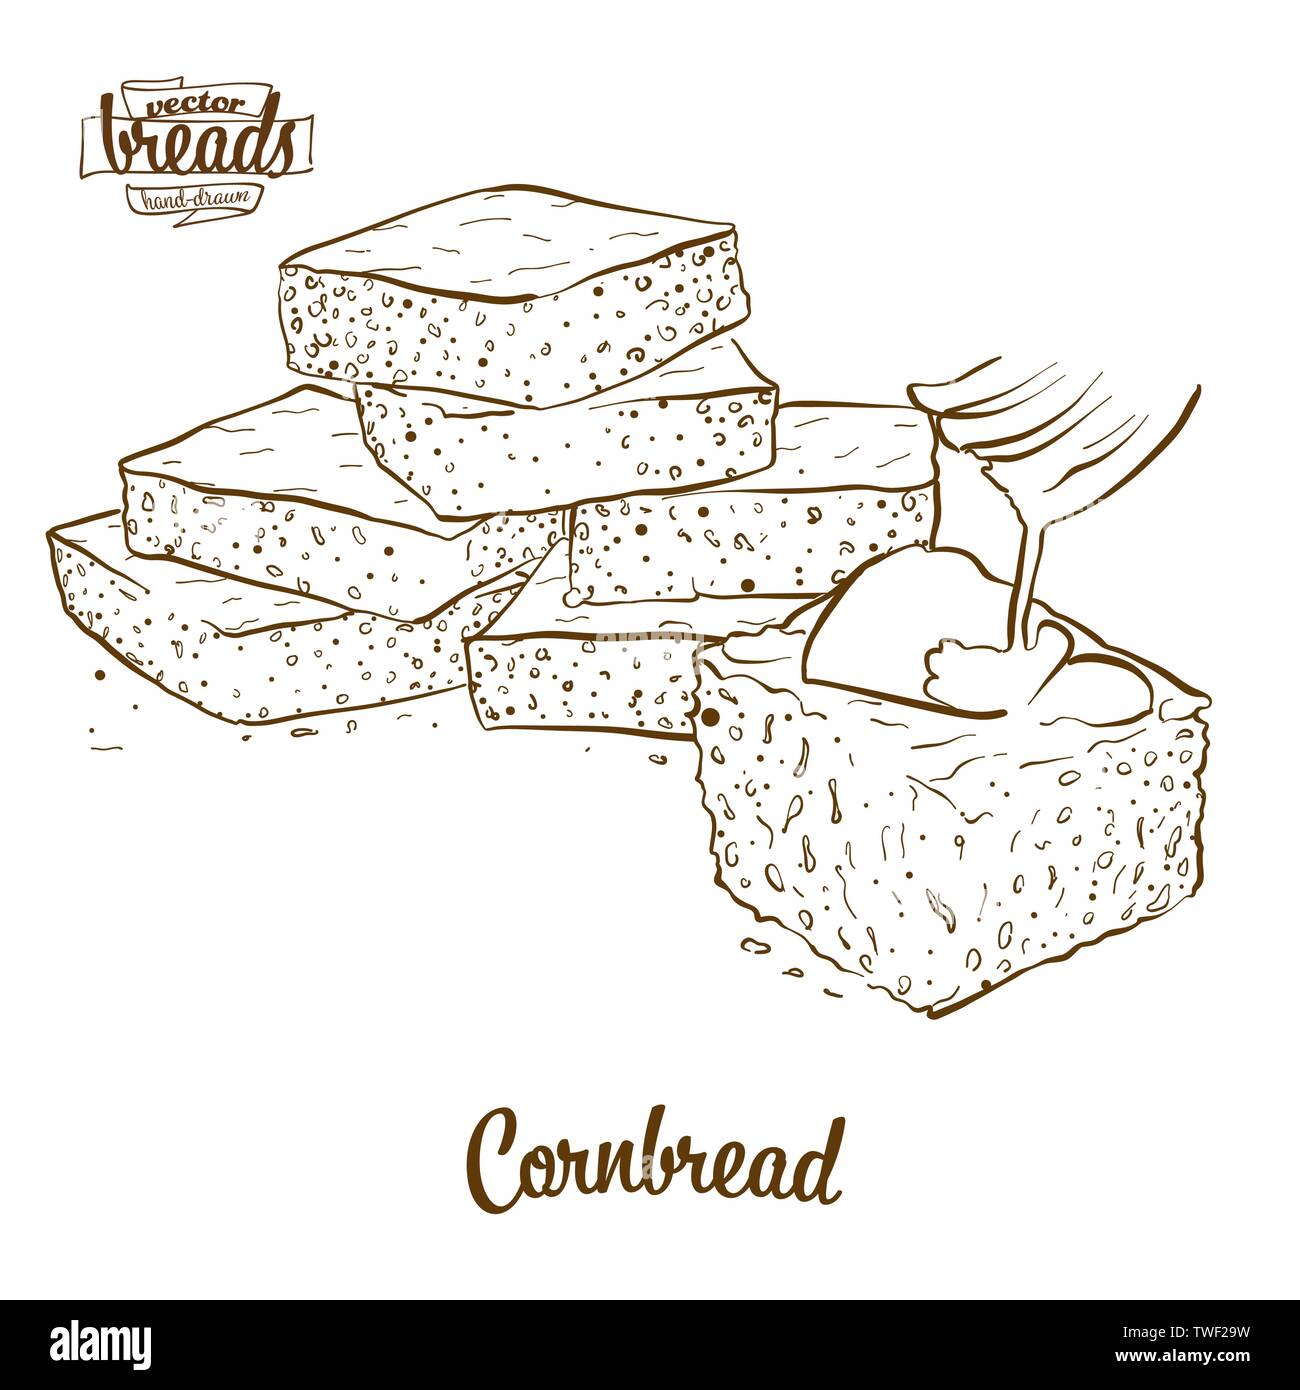 Cornbread Brot vektor Zeichnung. Essen Skizze der Cornbread, meist in Amerika bekannt. Bäckerei Abbildung Serie. Stock Vektor